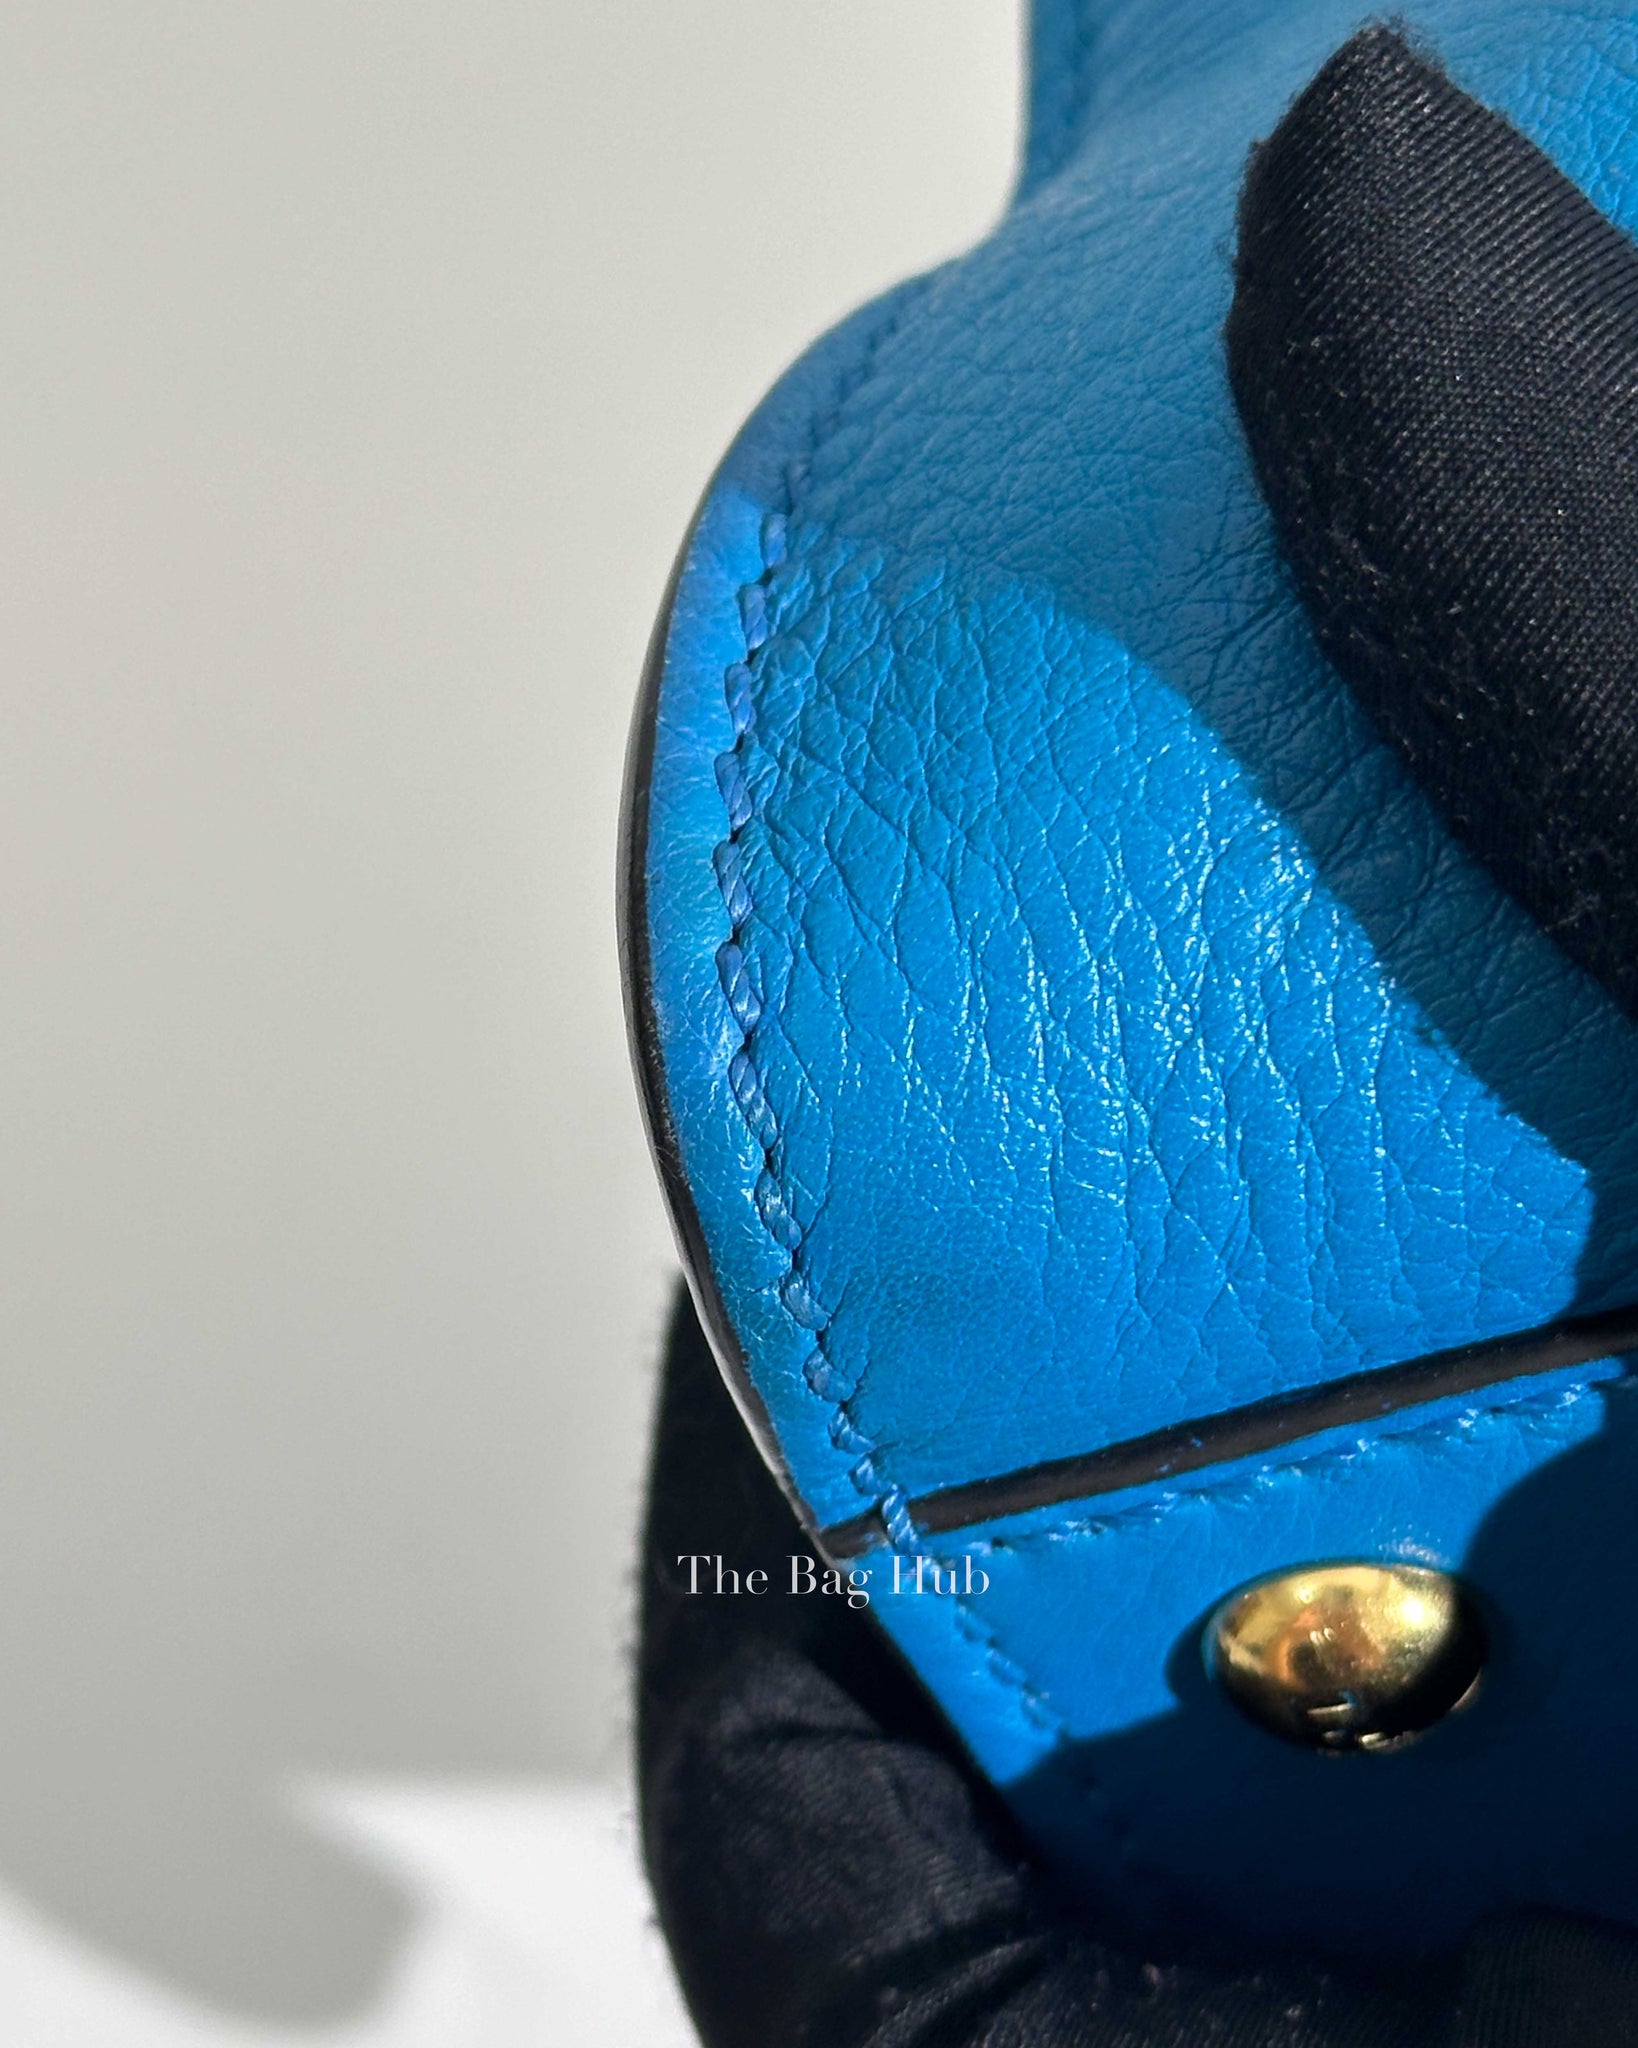 Fendi Blue Smooth Leather Peekabo Medium Bag